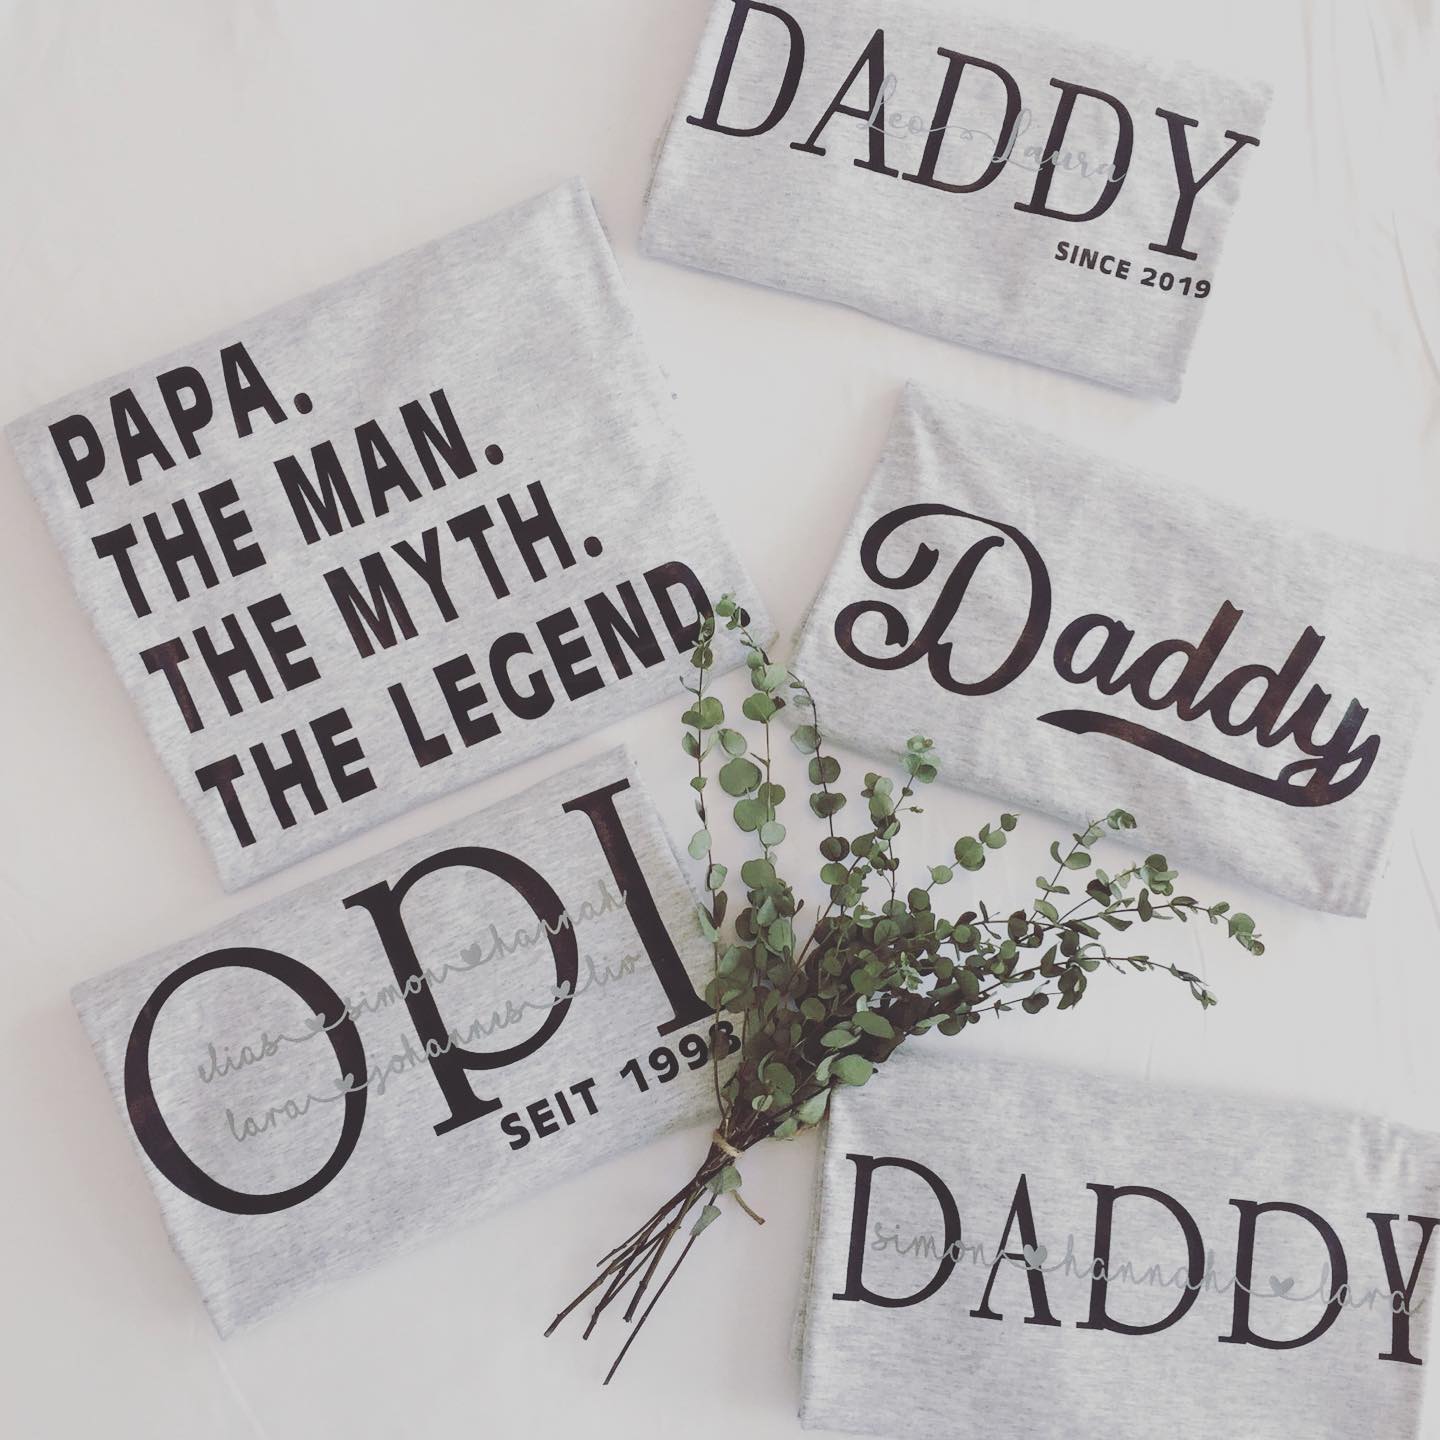 graue T-Shirts mit schwarzem Aufdruck wie Daddy, Opi seit 1998, Papa. The Man. The Myth. The Legend